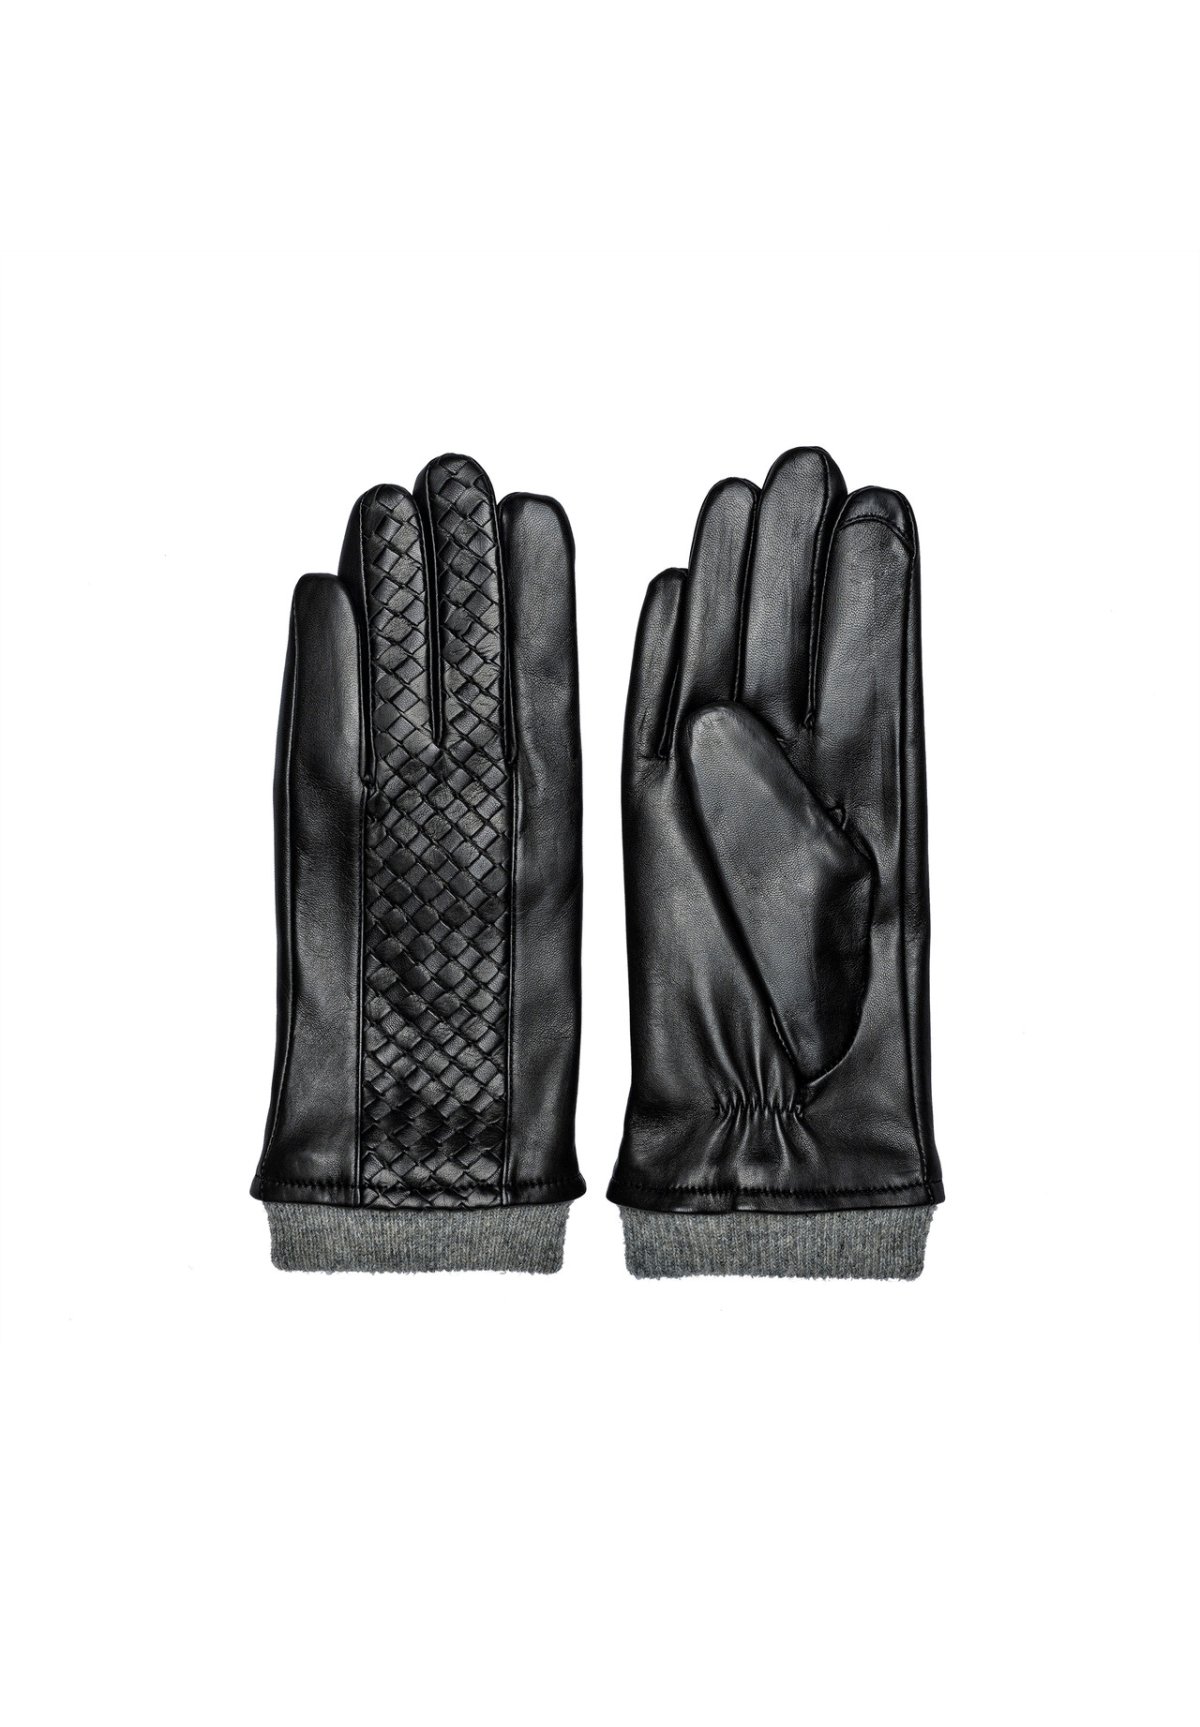 RE:Designed Karis handsker, sort - Handsker og huer -